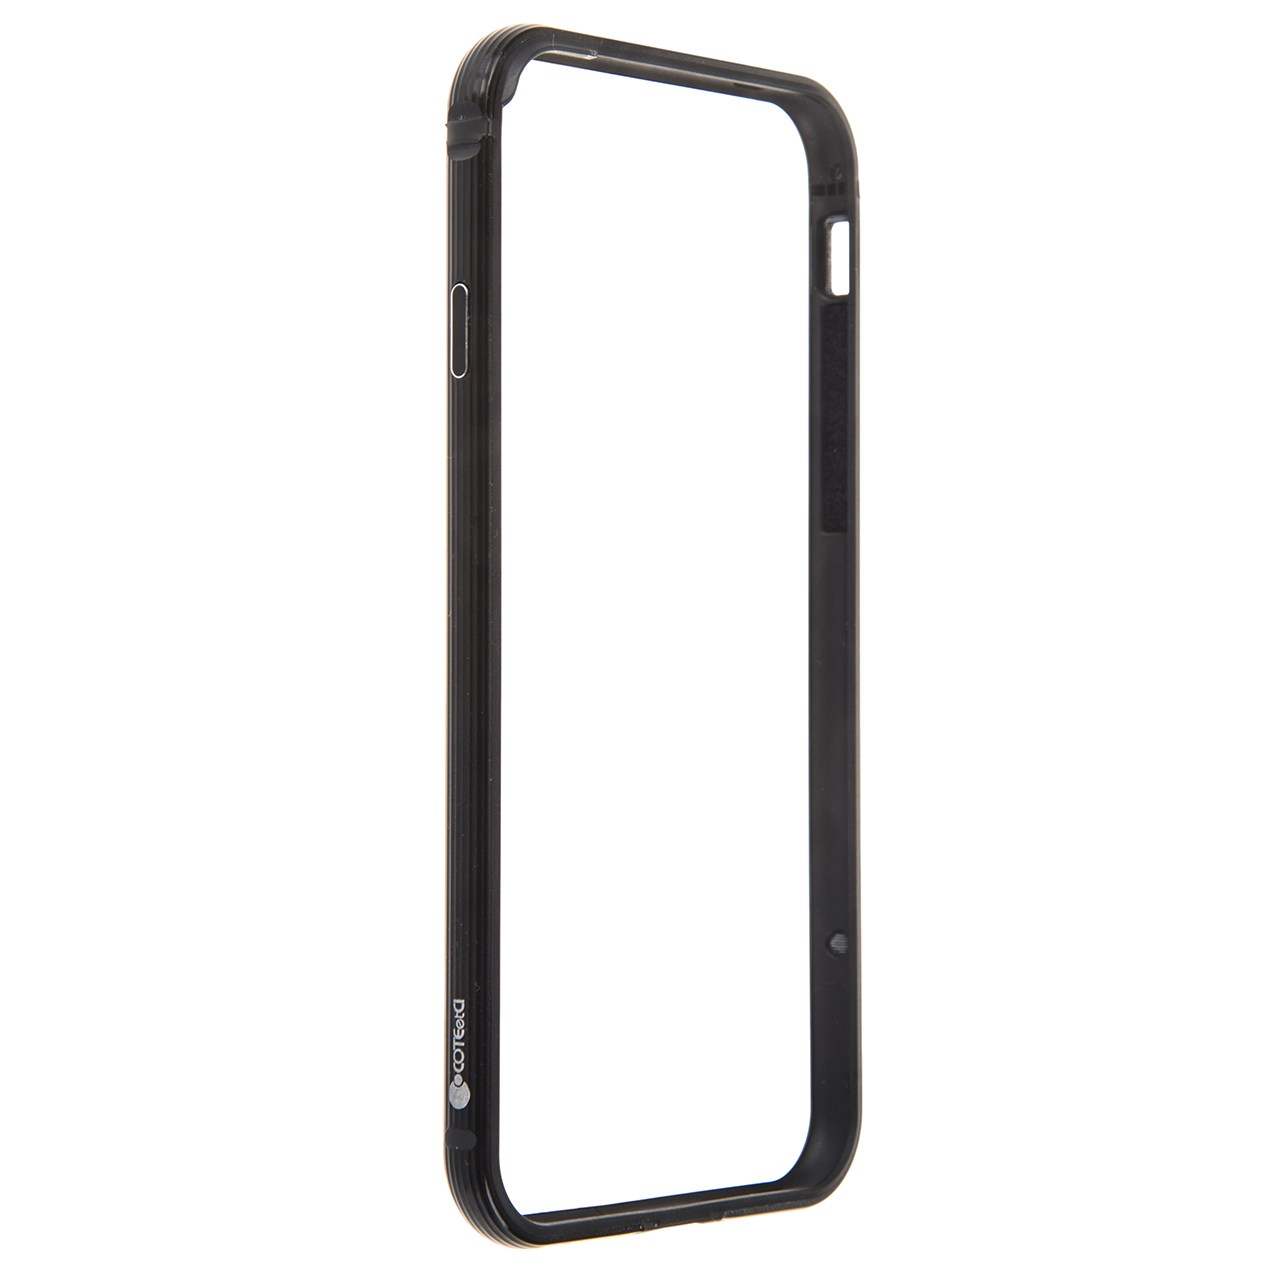 بامپر کوتیتکی مدل CS7001 مناسب برای گوشی موبایل آیفون 7